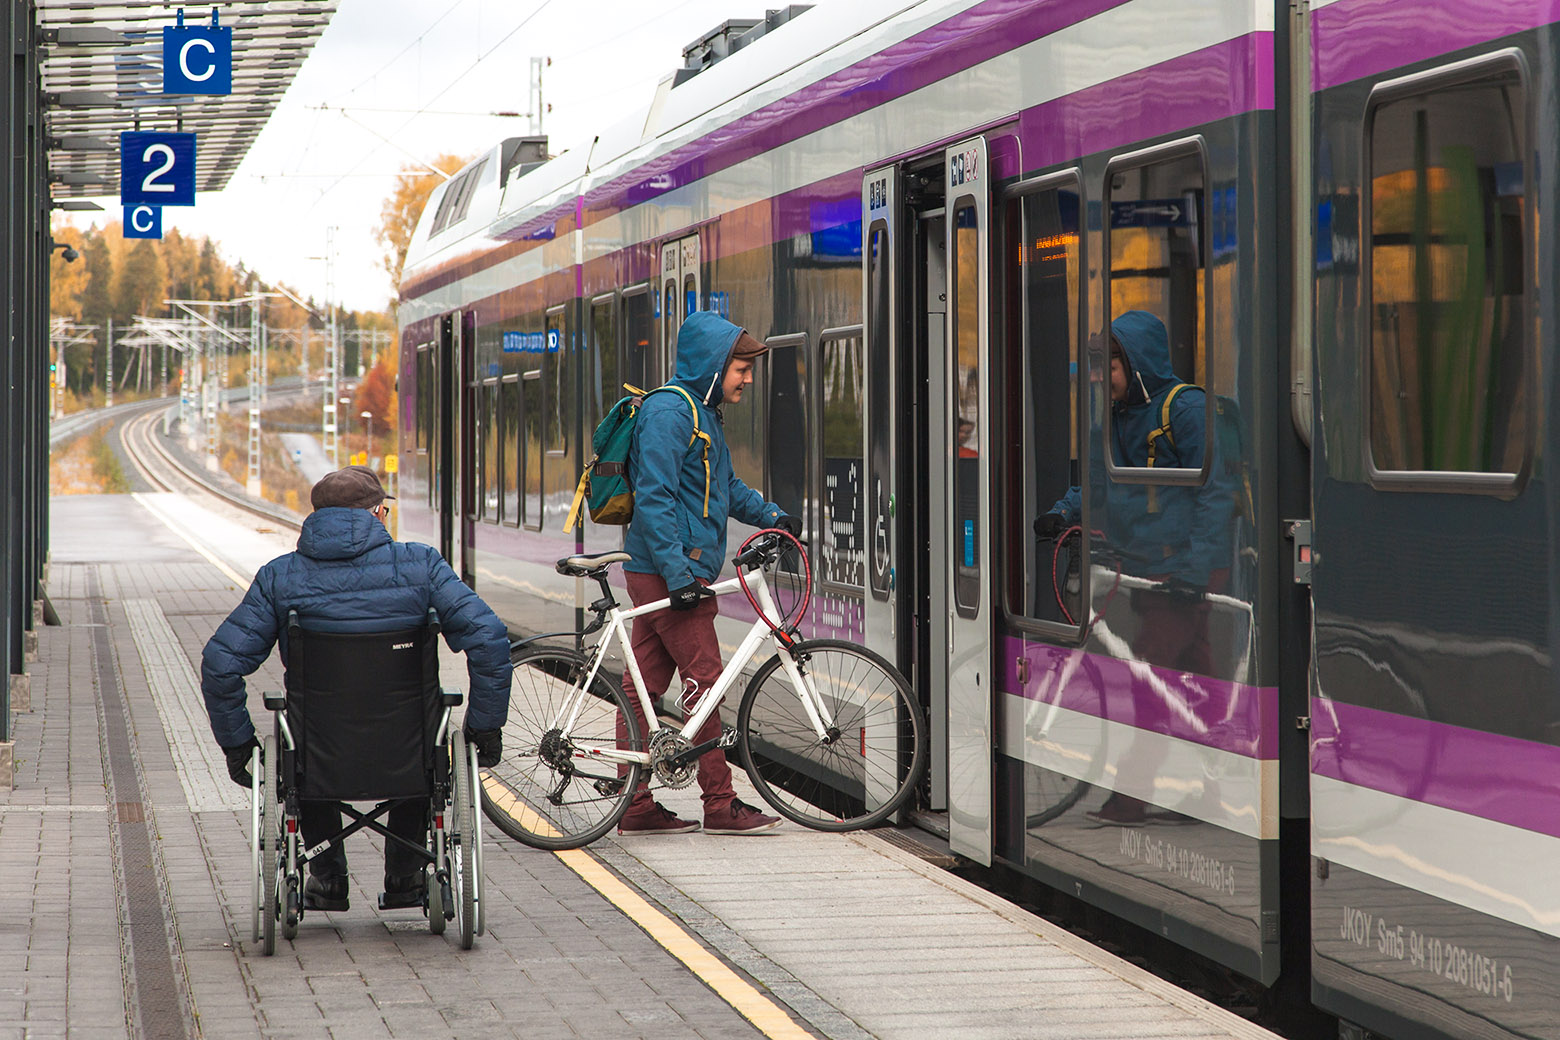 Kuvituskuva rautatieasemasta, jossa junaan astumassa pyörätuolinkäyttäjä ja pyöräilijä.